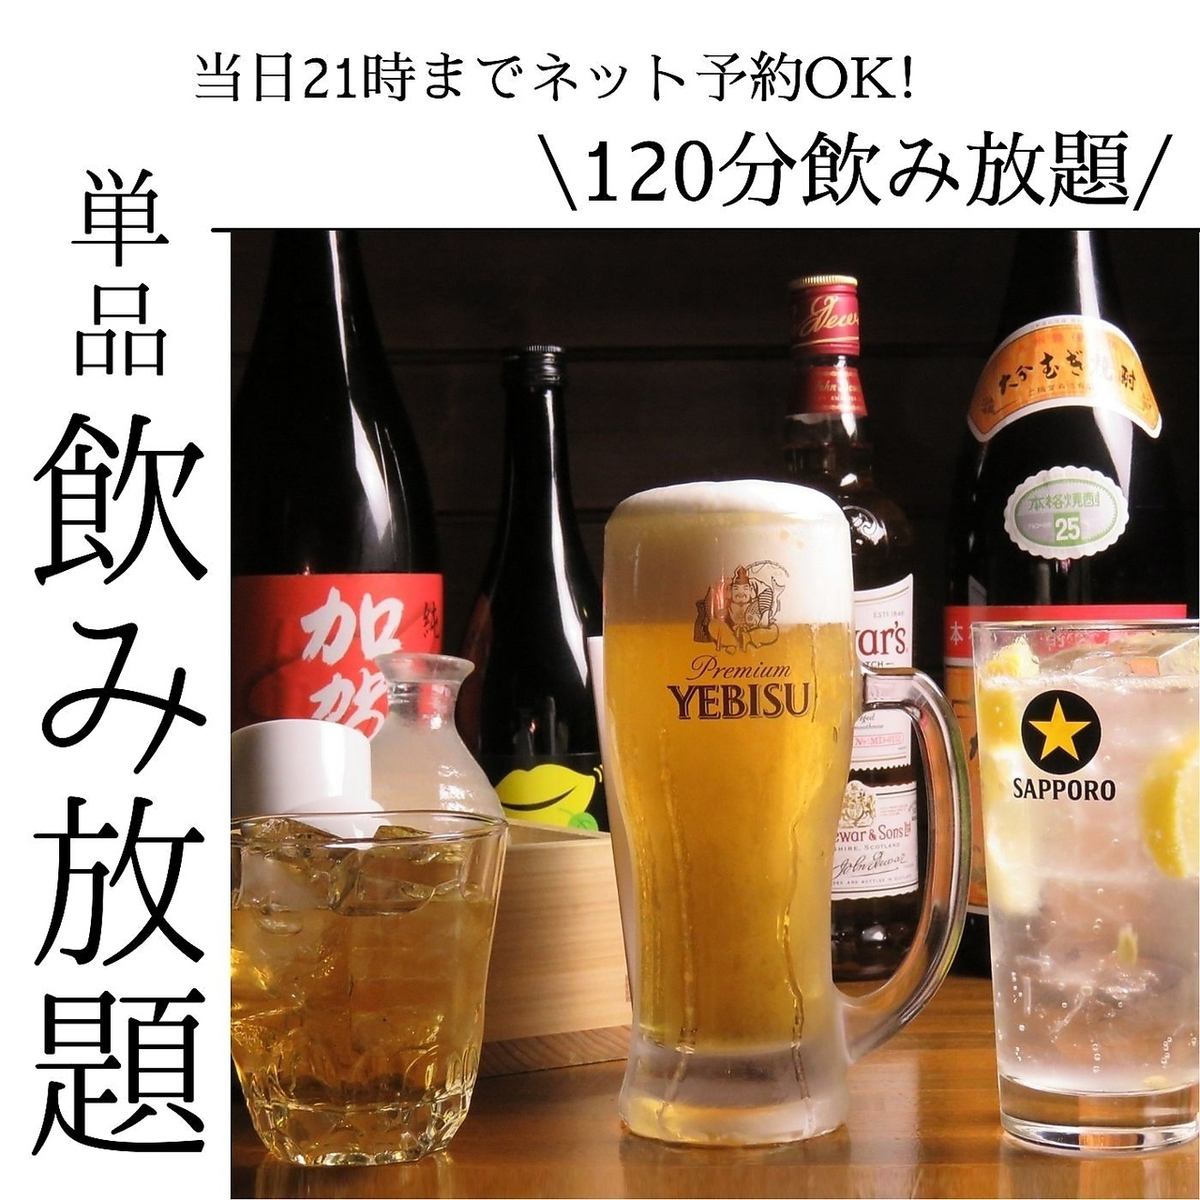 단품 음료 무제한 2,000엔(부가세 포함)